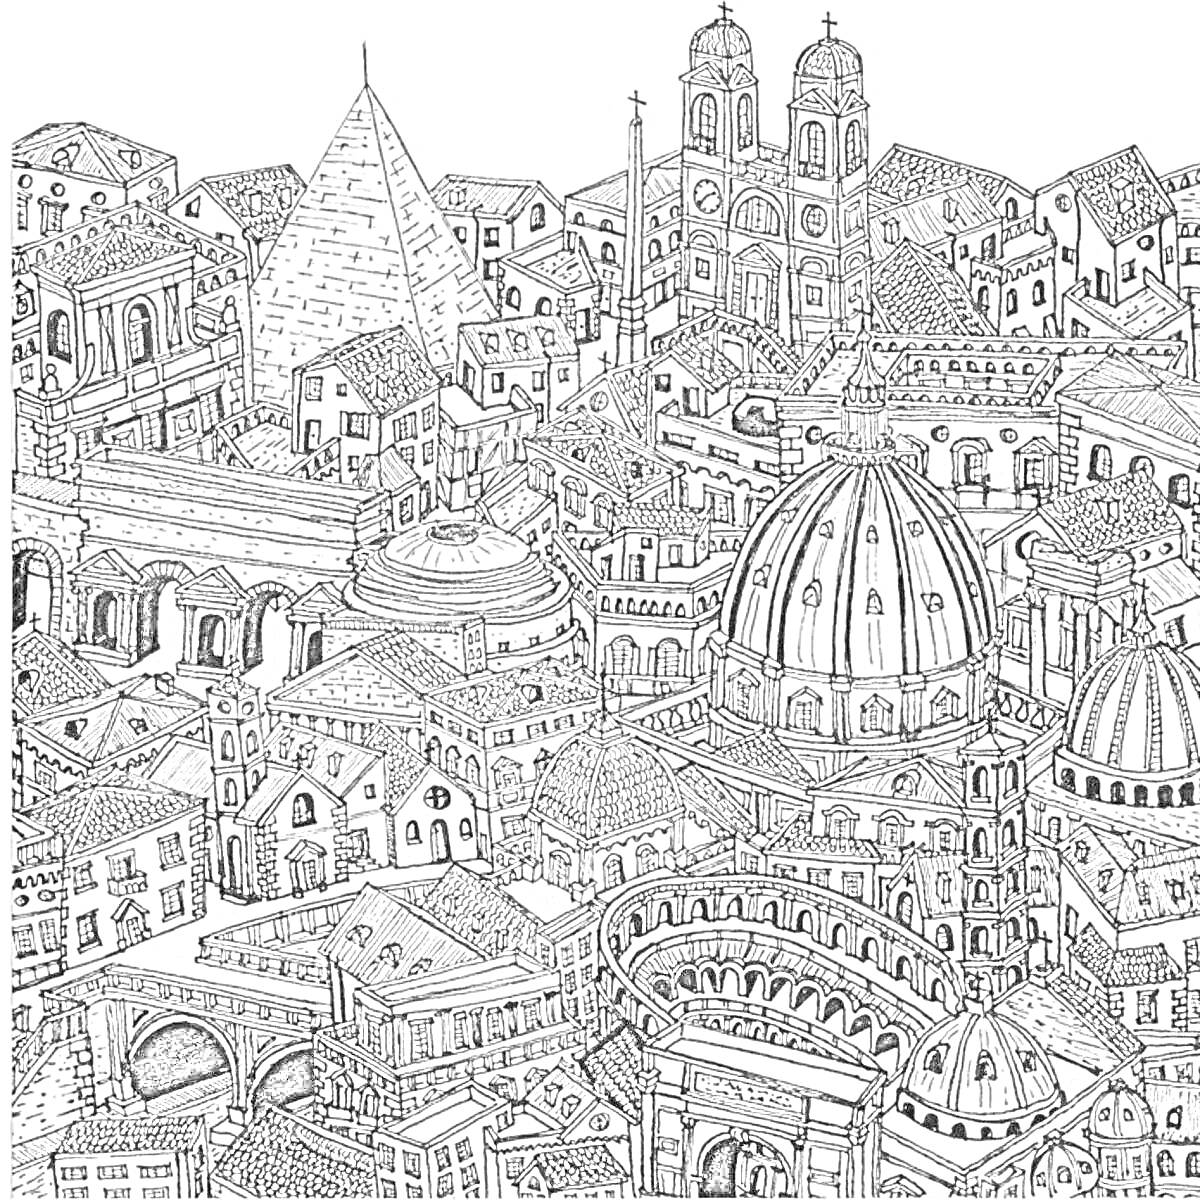 Пейзаж города с элементами архитектуры Рима, включая купола, арки, башни, пирамиды и каменные здания